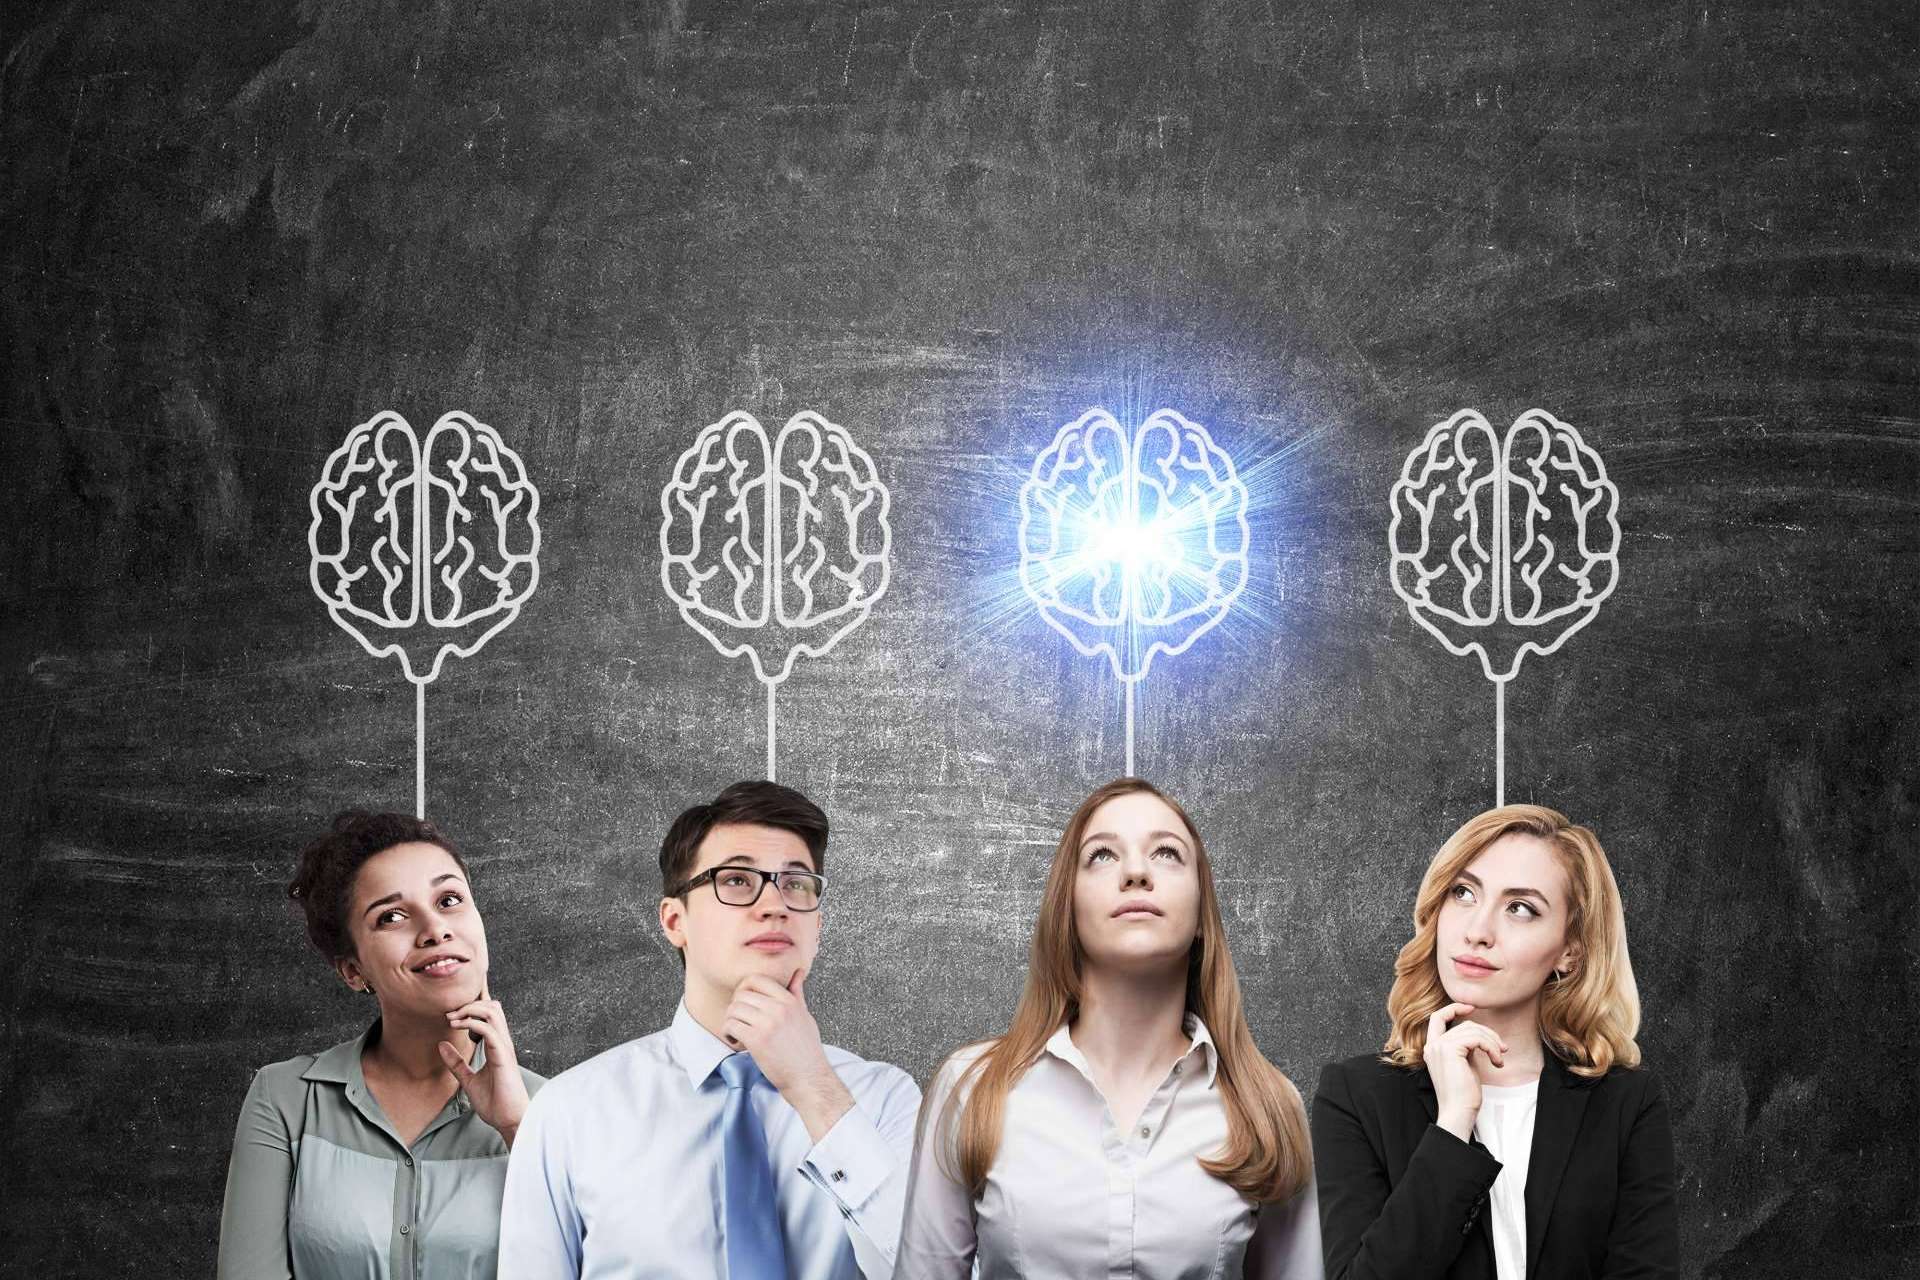 Desarrollando la inteligencia emocional multidisciplinar como base de una inteligencia exitosa, por el Instituto Psicobiológico